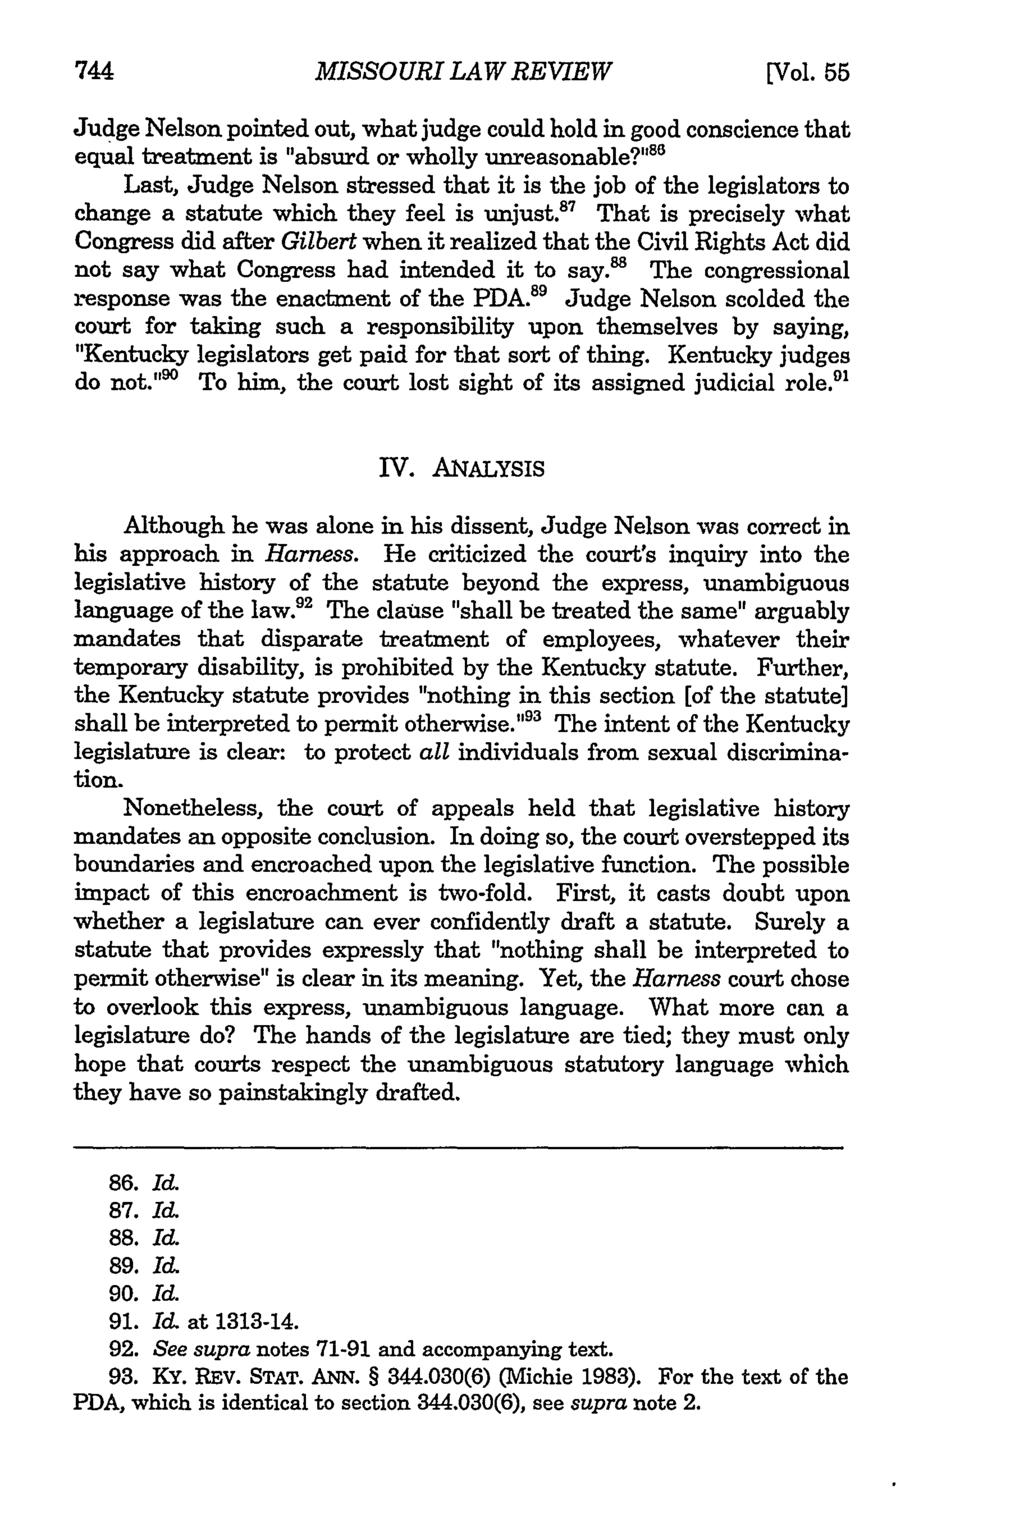 744 Missouri MISSOURI Law Review, Vol. 55, Iss. 3 [1990], Art. 3 LAW REVIEW [Vol.